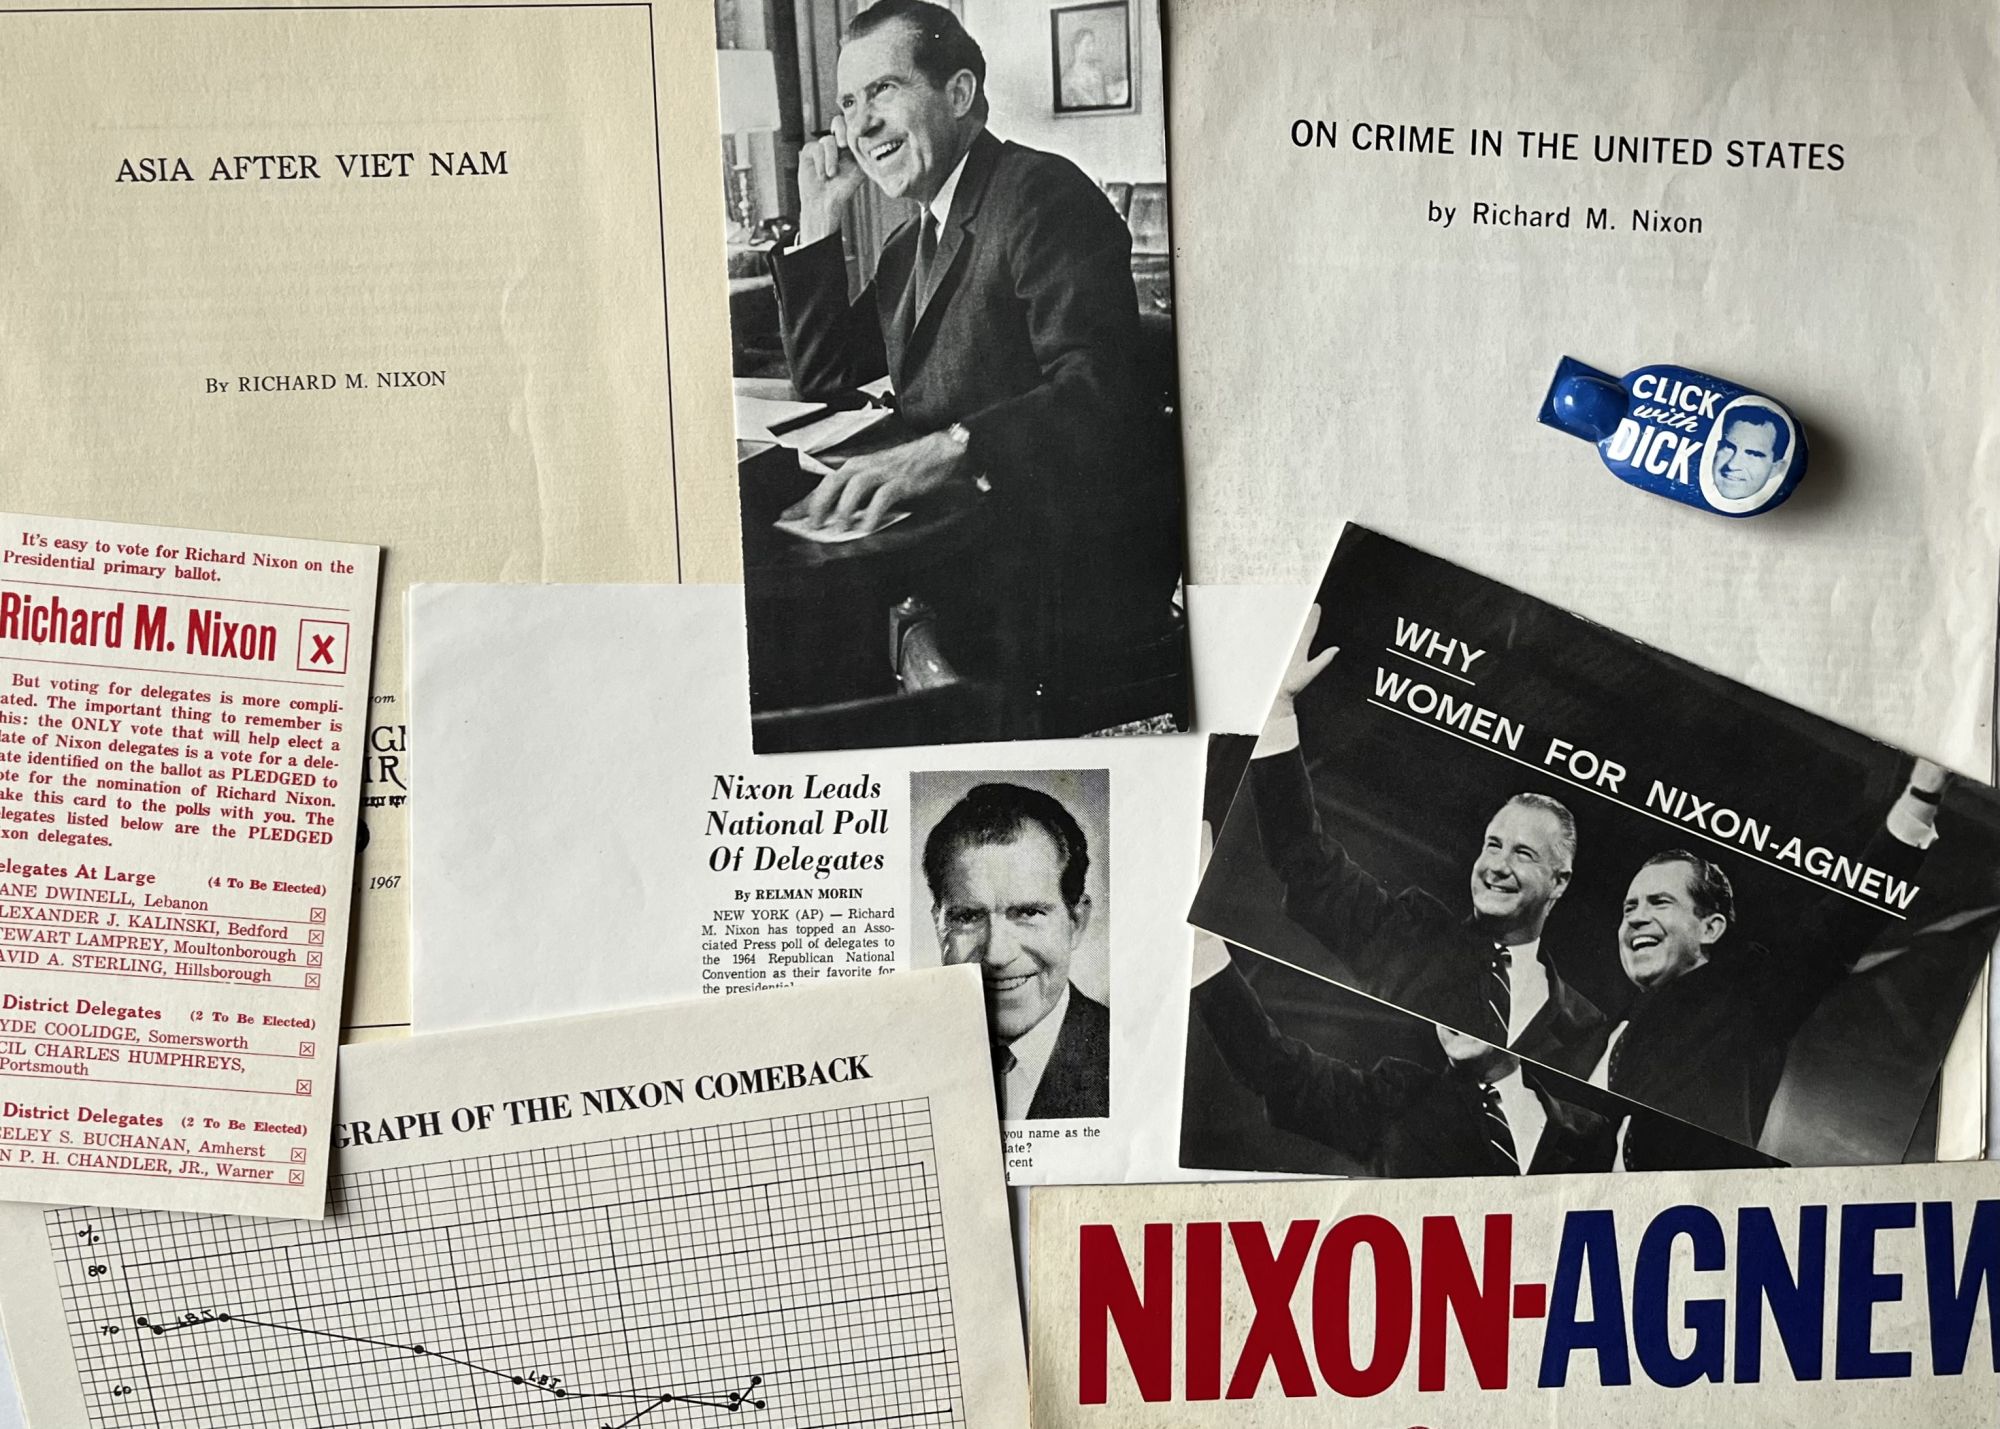 nixon 1968 campaign